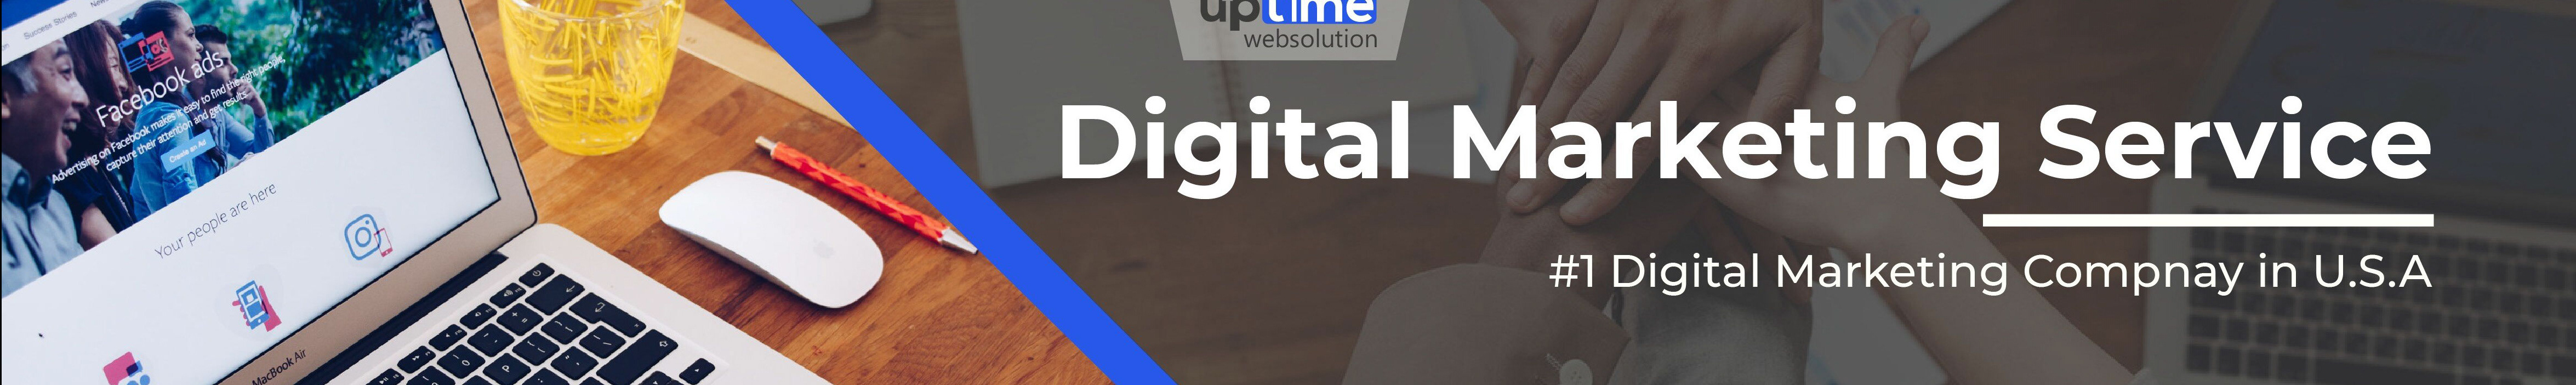 uptime websolution's profile banner